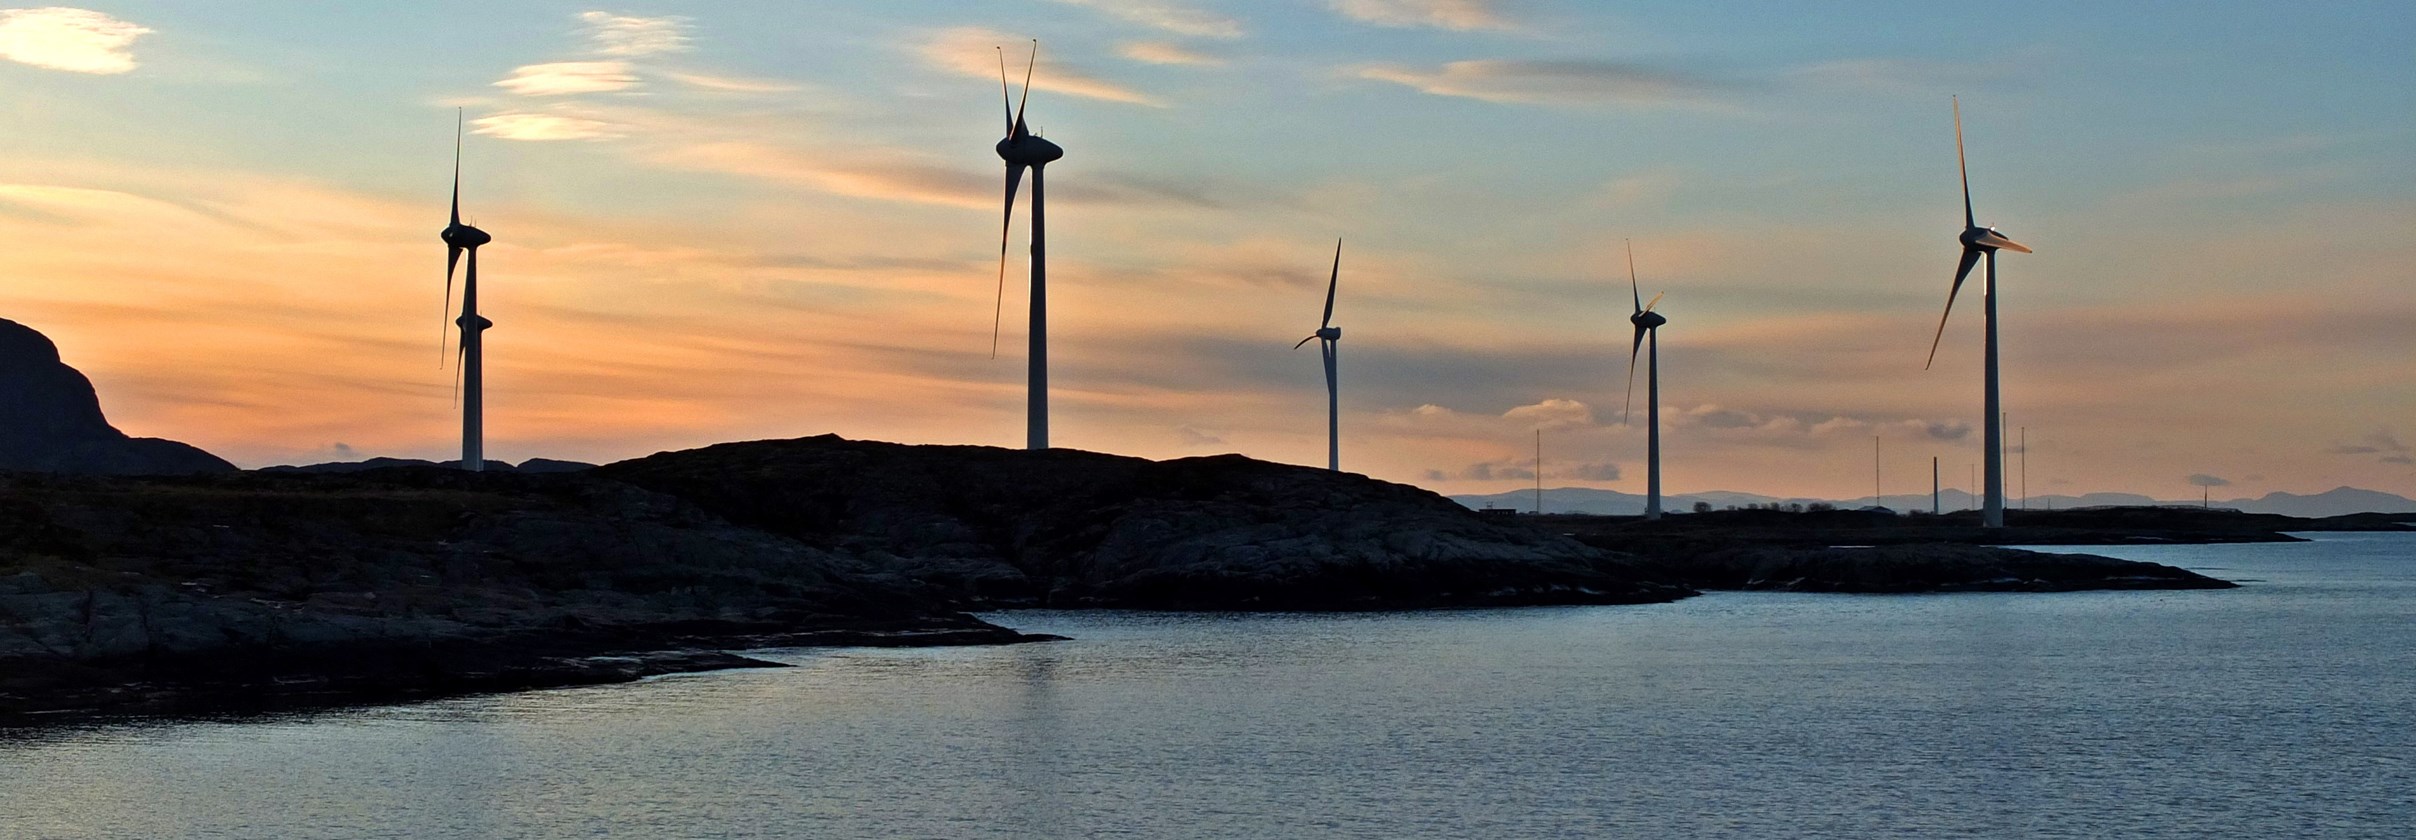 Valsneset vindkraftverk ligger i Bjugn kommune i Sør-Trøndelag fylke